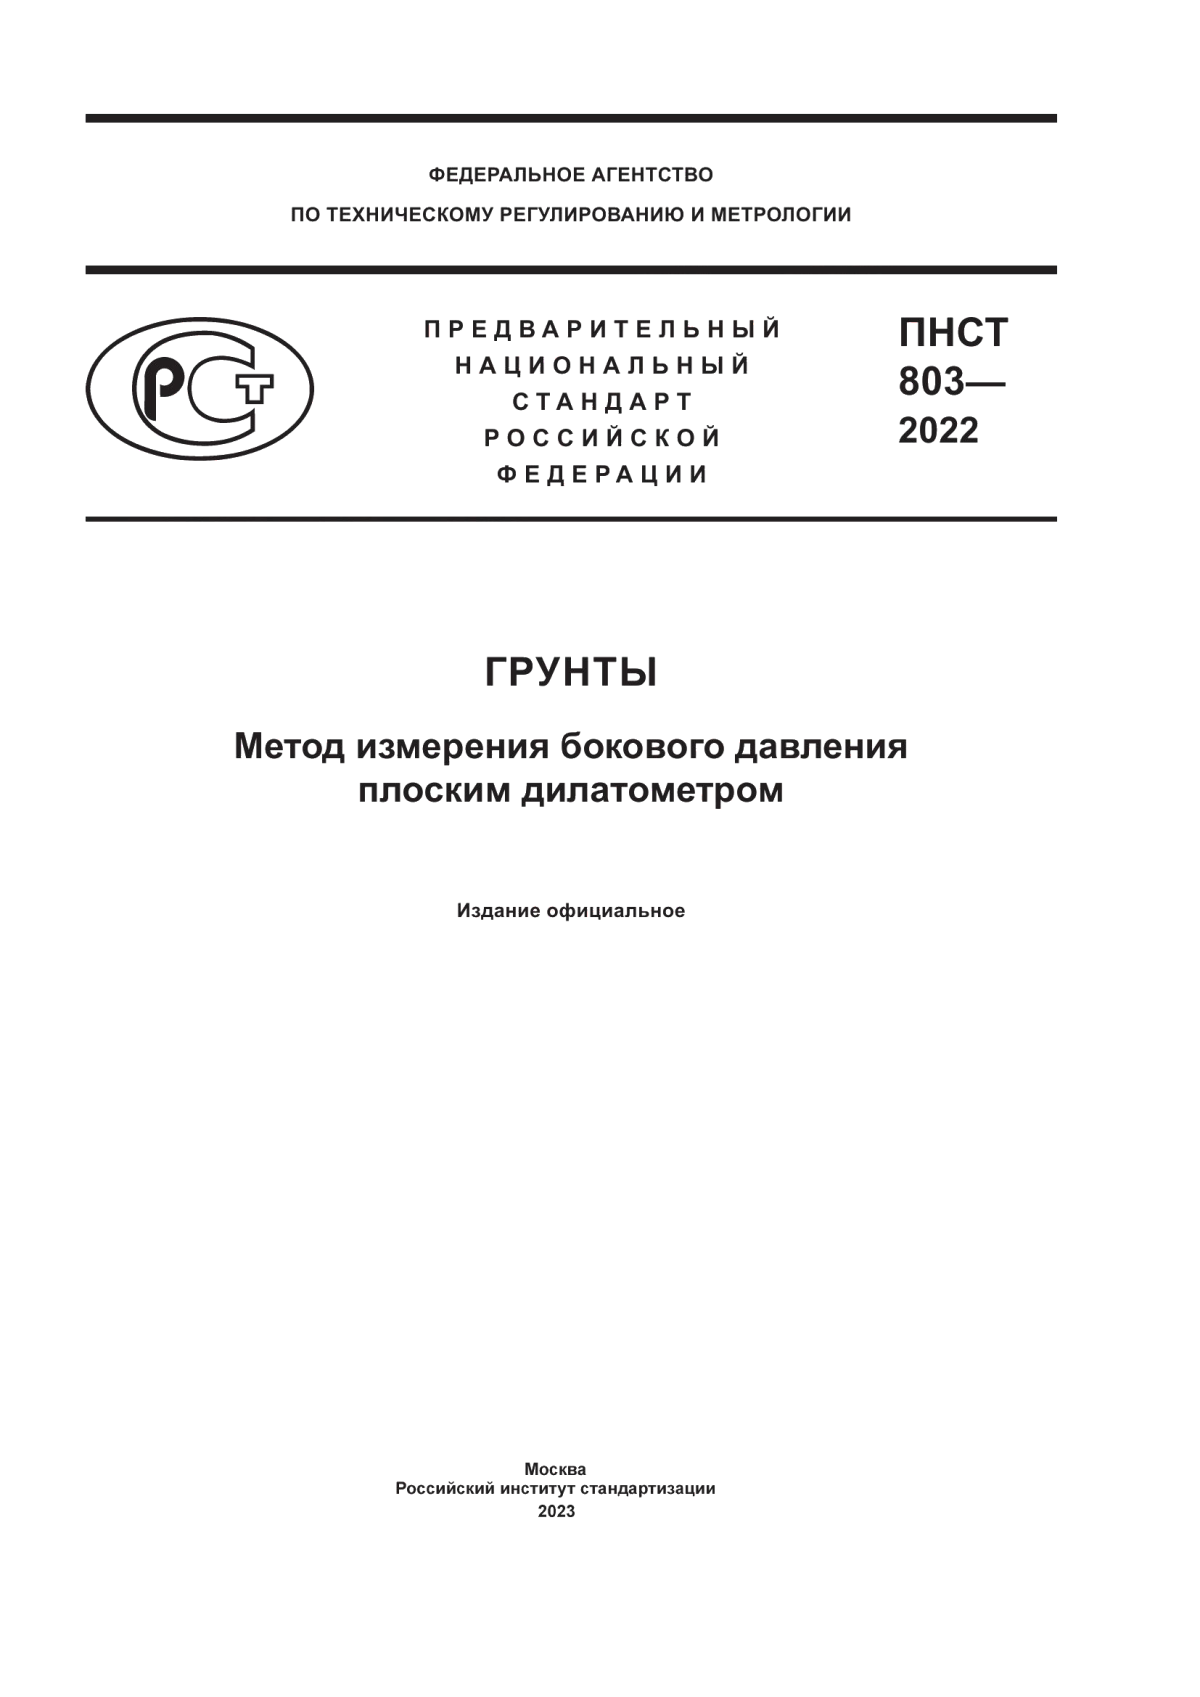 ПНСТ 803-2022 Грунты. Метод измерения бокового давления плоским дилатометром